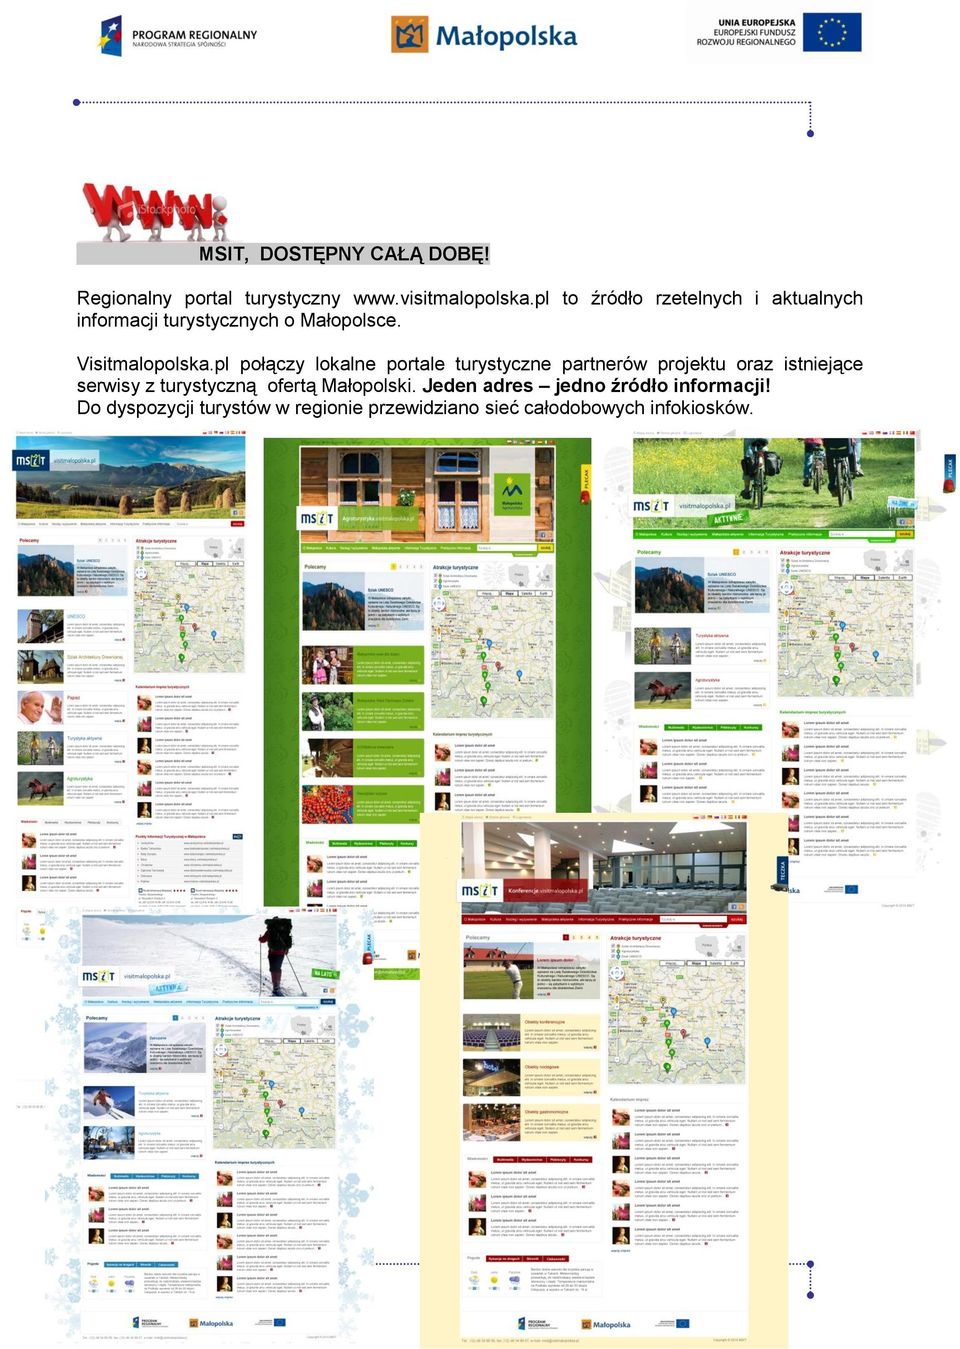 pl połączy lokalne portale turystyczne partnerów projektu oraz istniejące serwisy z turystyczną